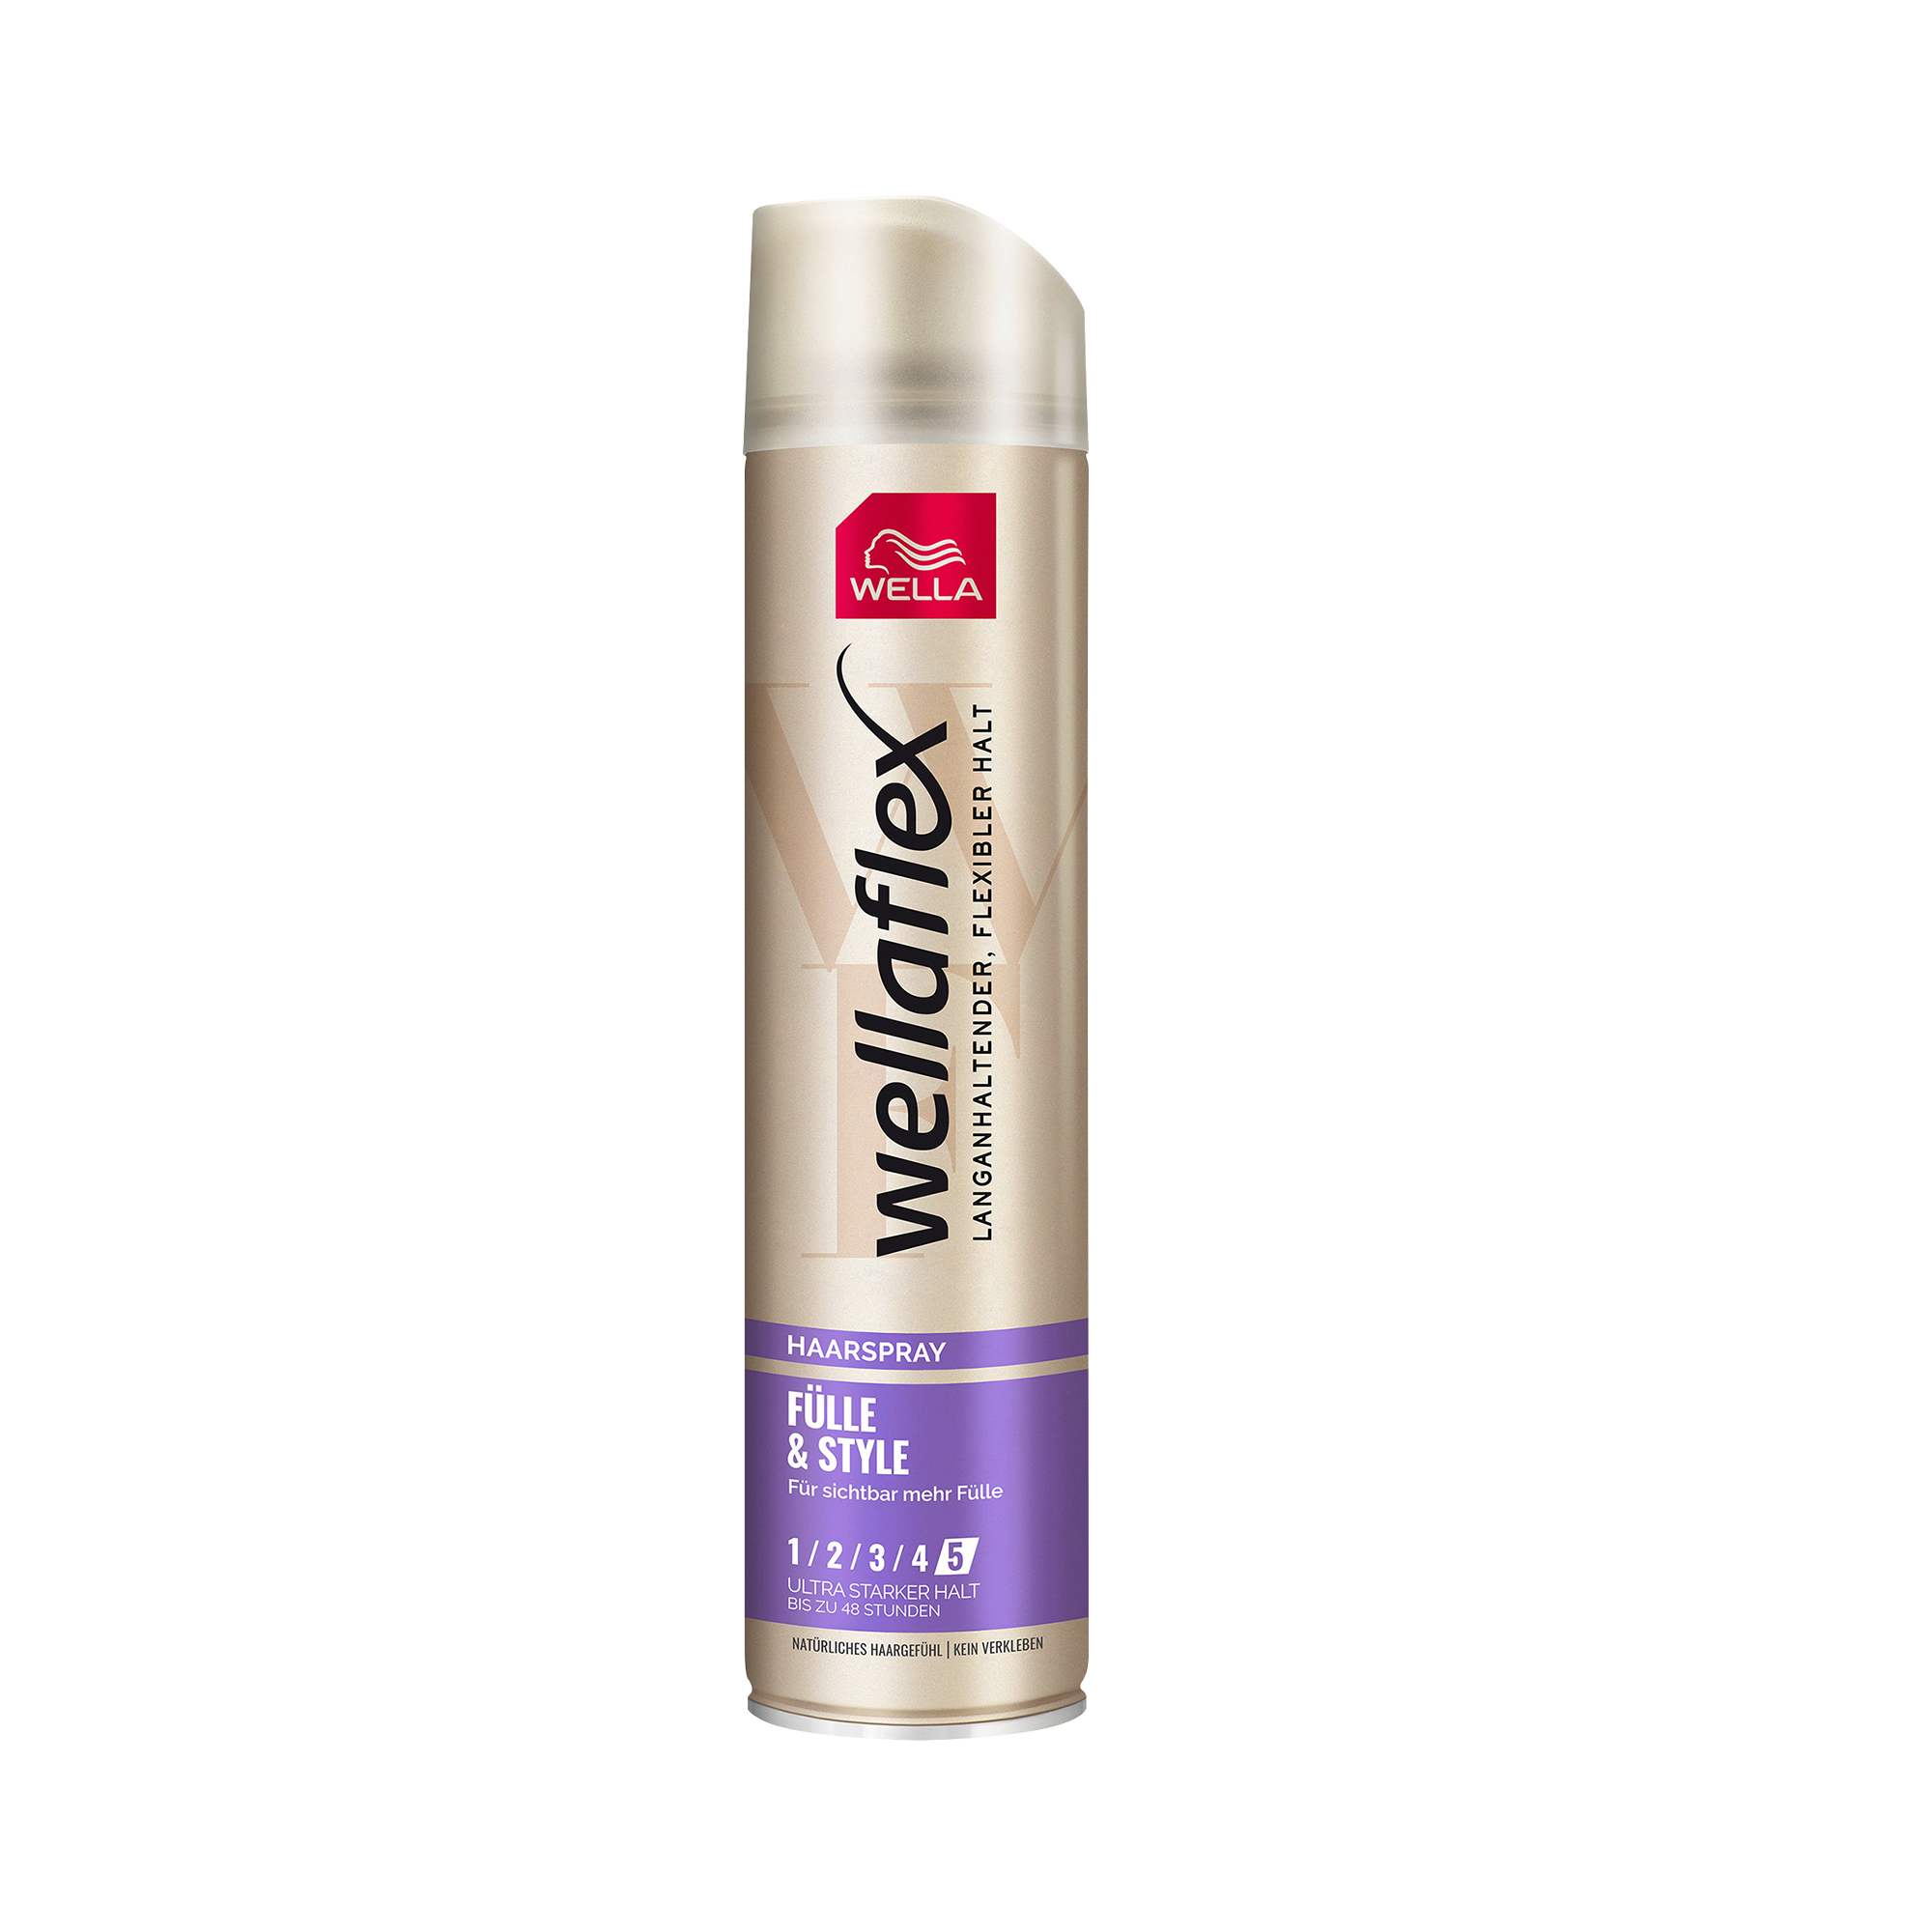 Лак для волос Wella wellaflex ультра сильная фиксация 250мл спрей праймер для глобальной реновации волос